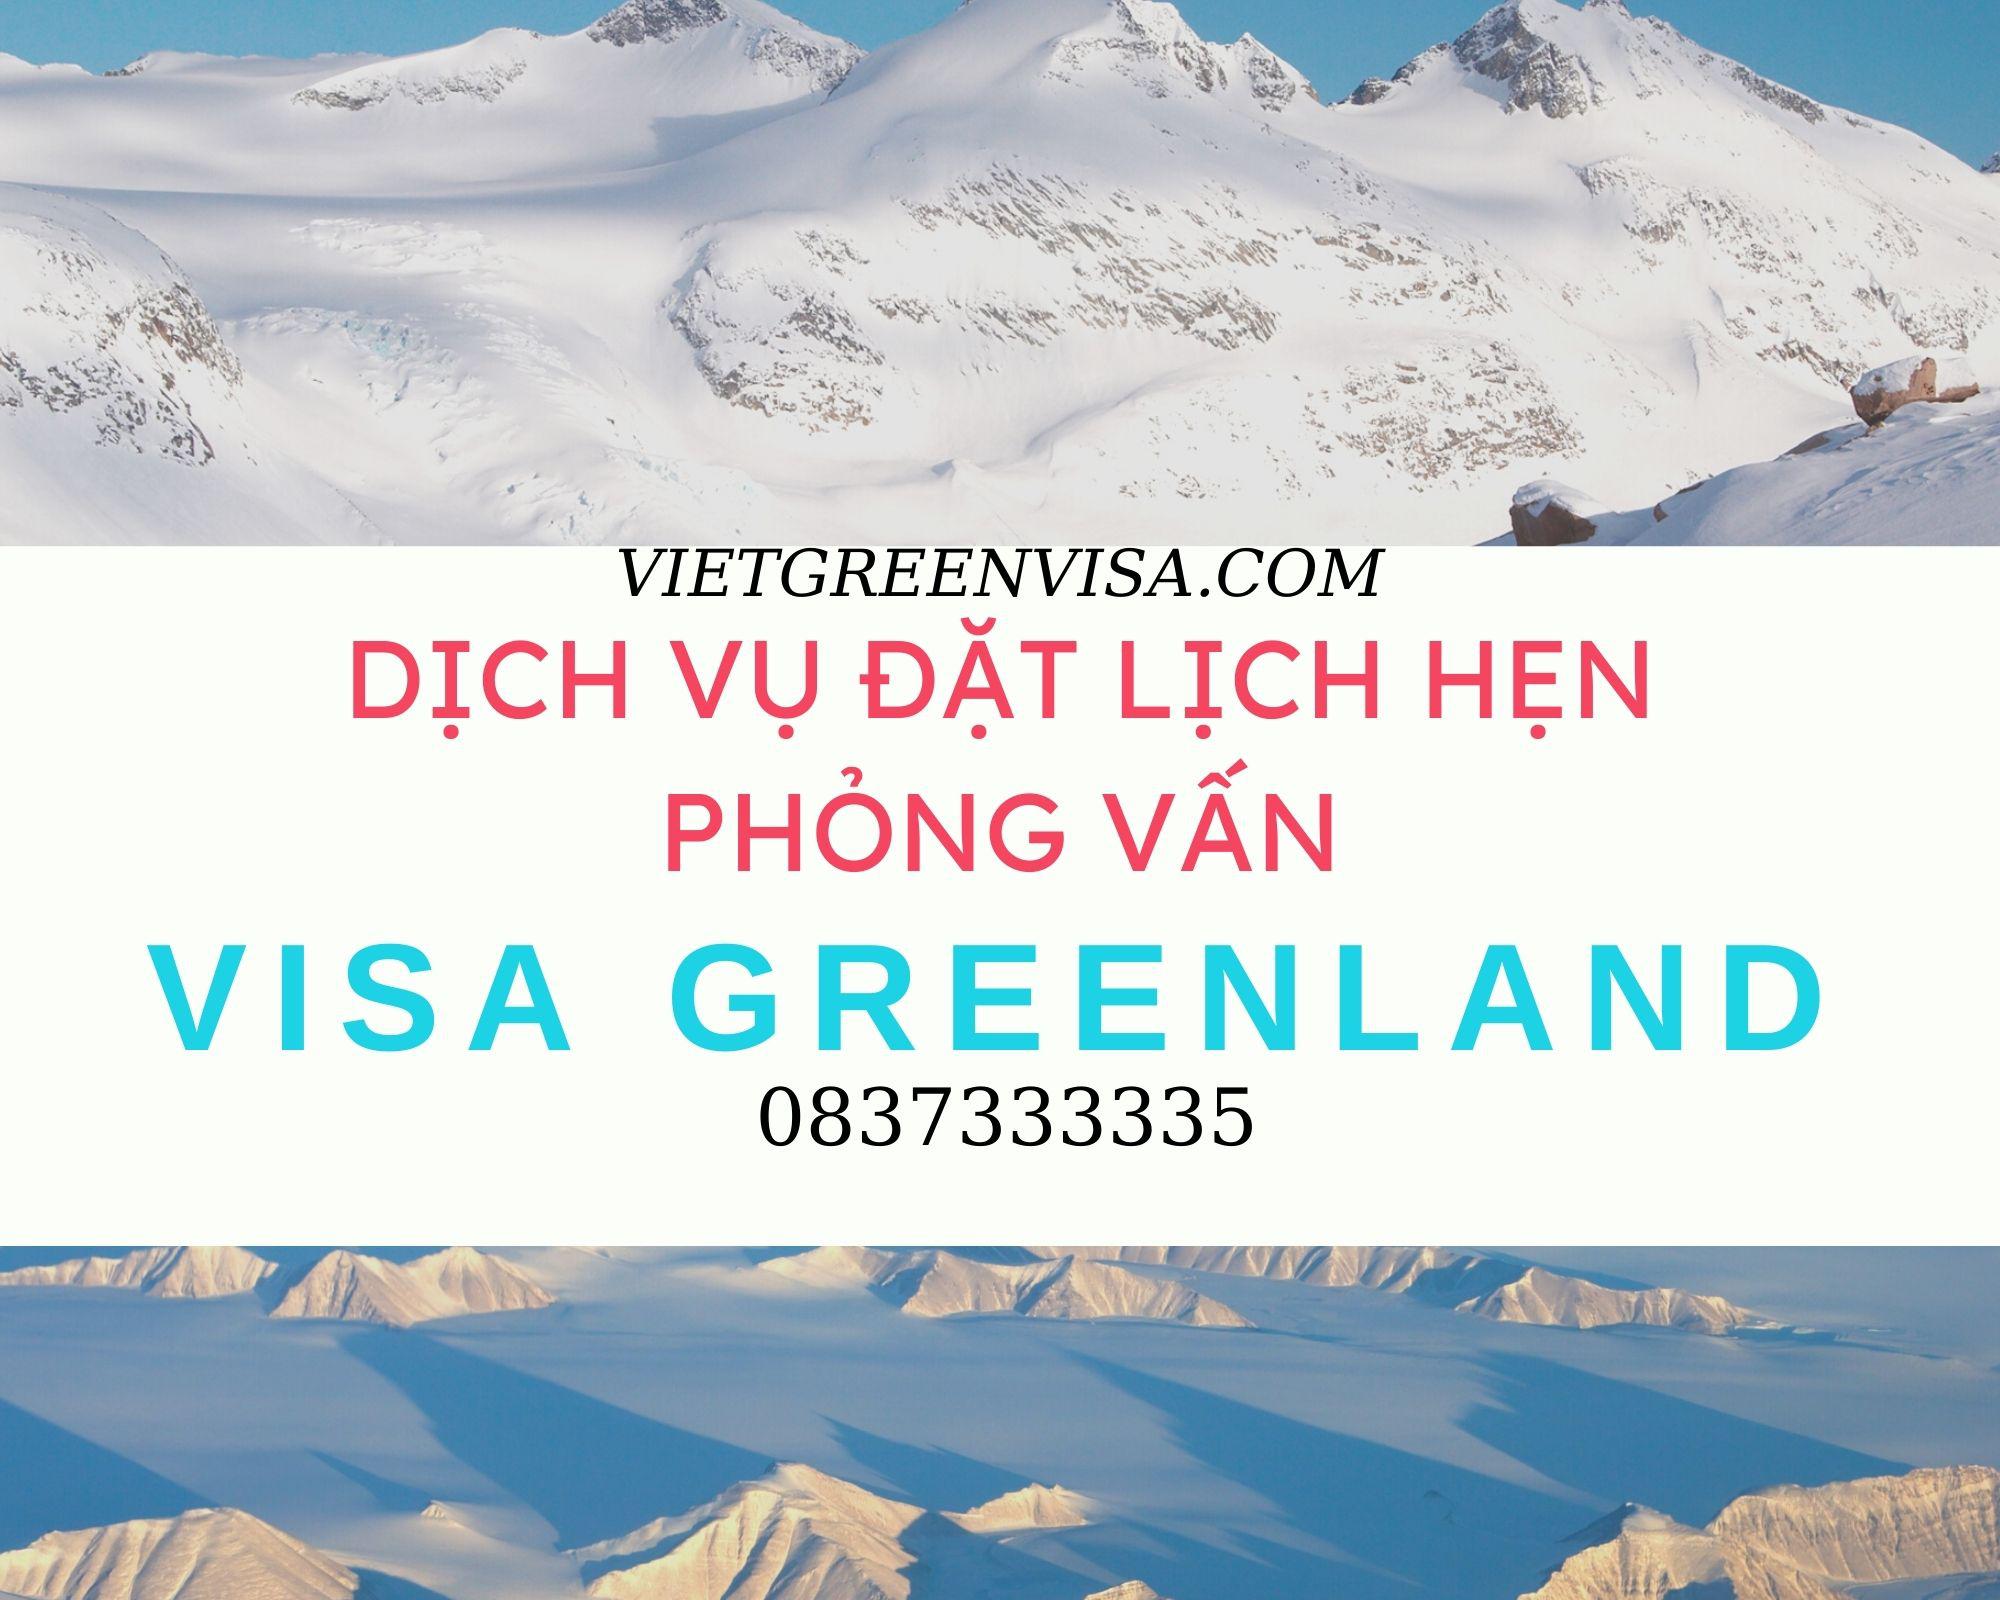 Dịch vụ đặt lịch hẹn phỏng vấn visa Greenland